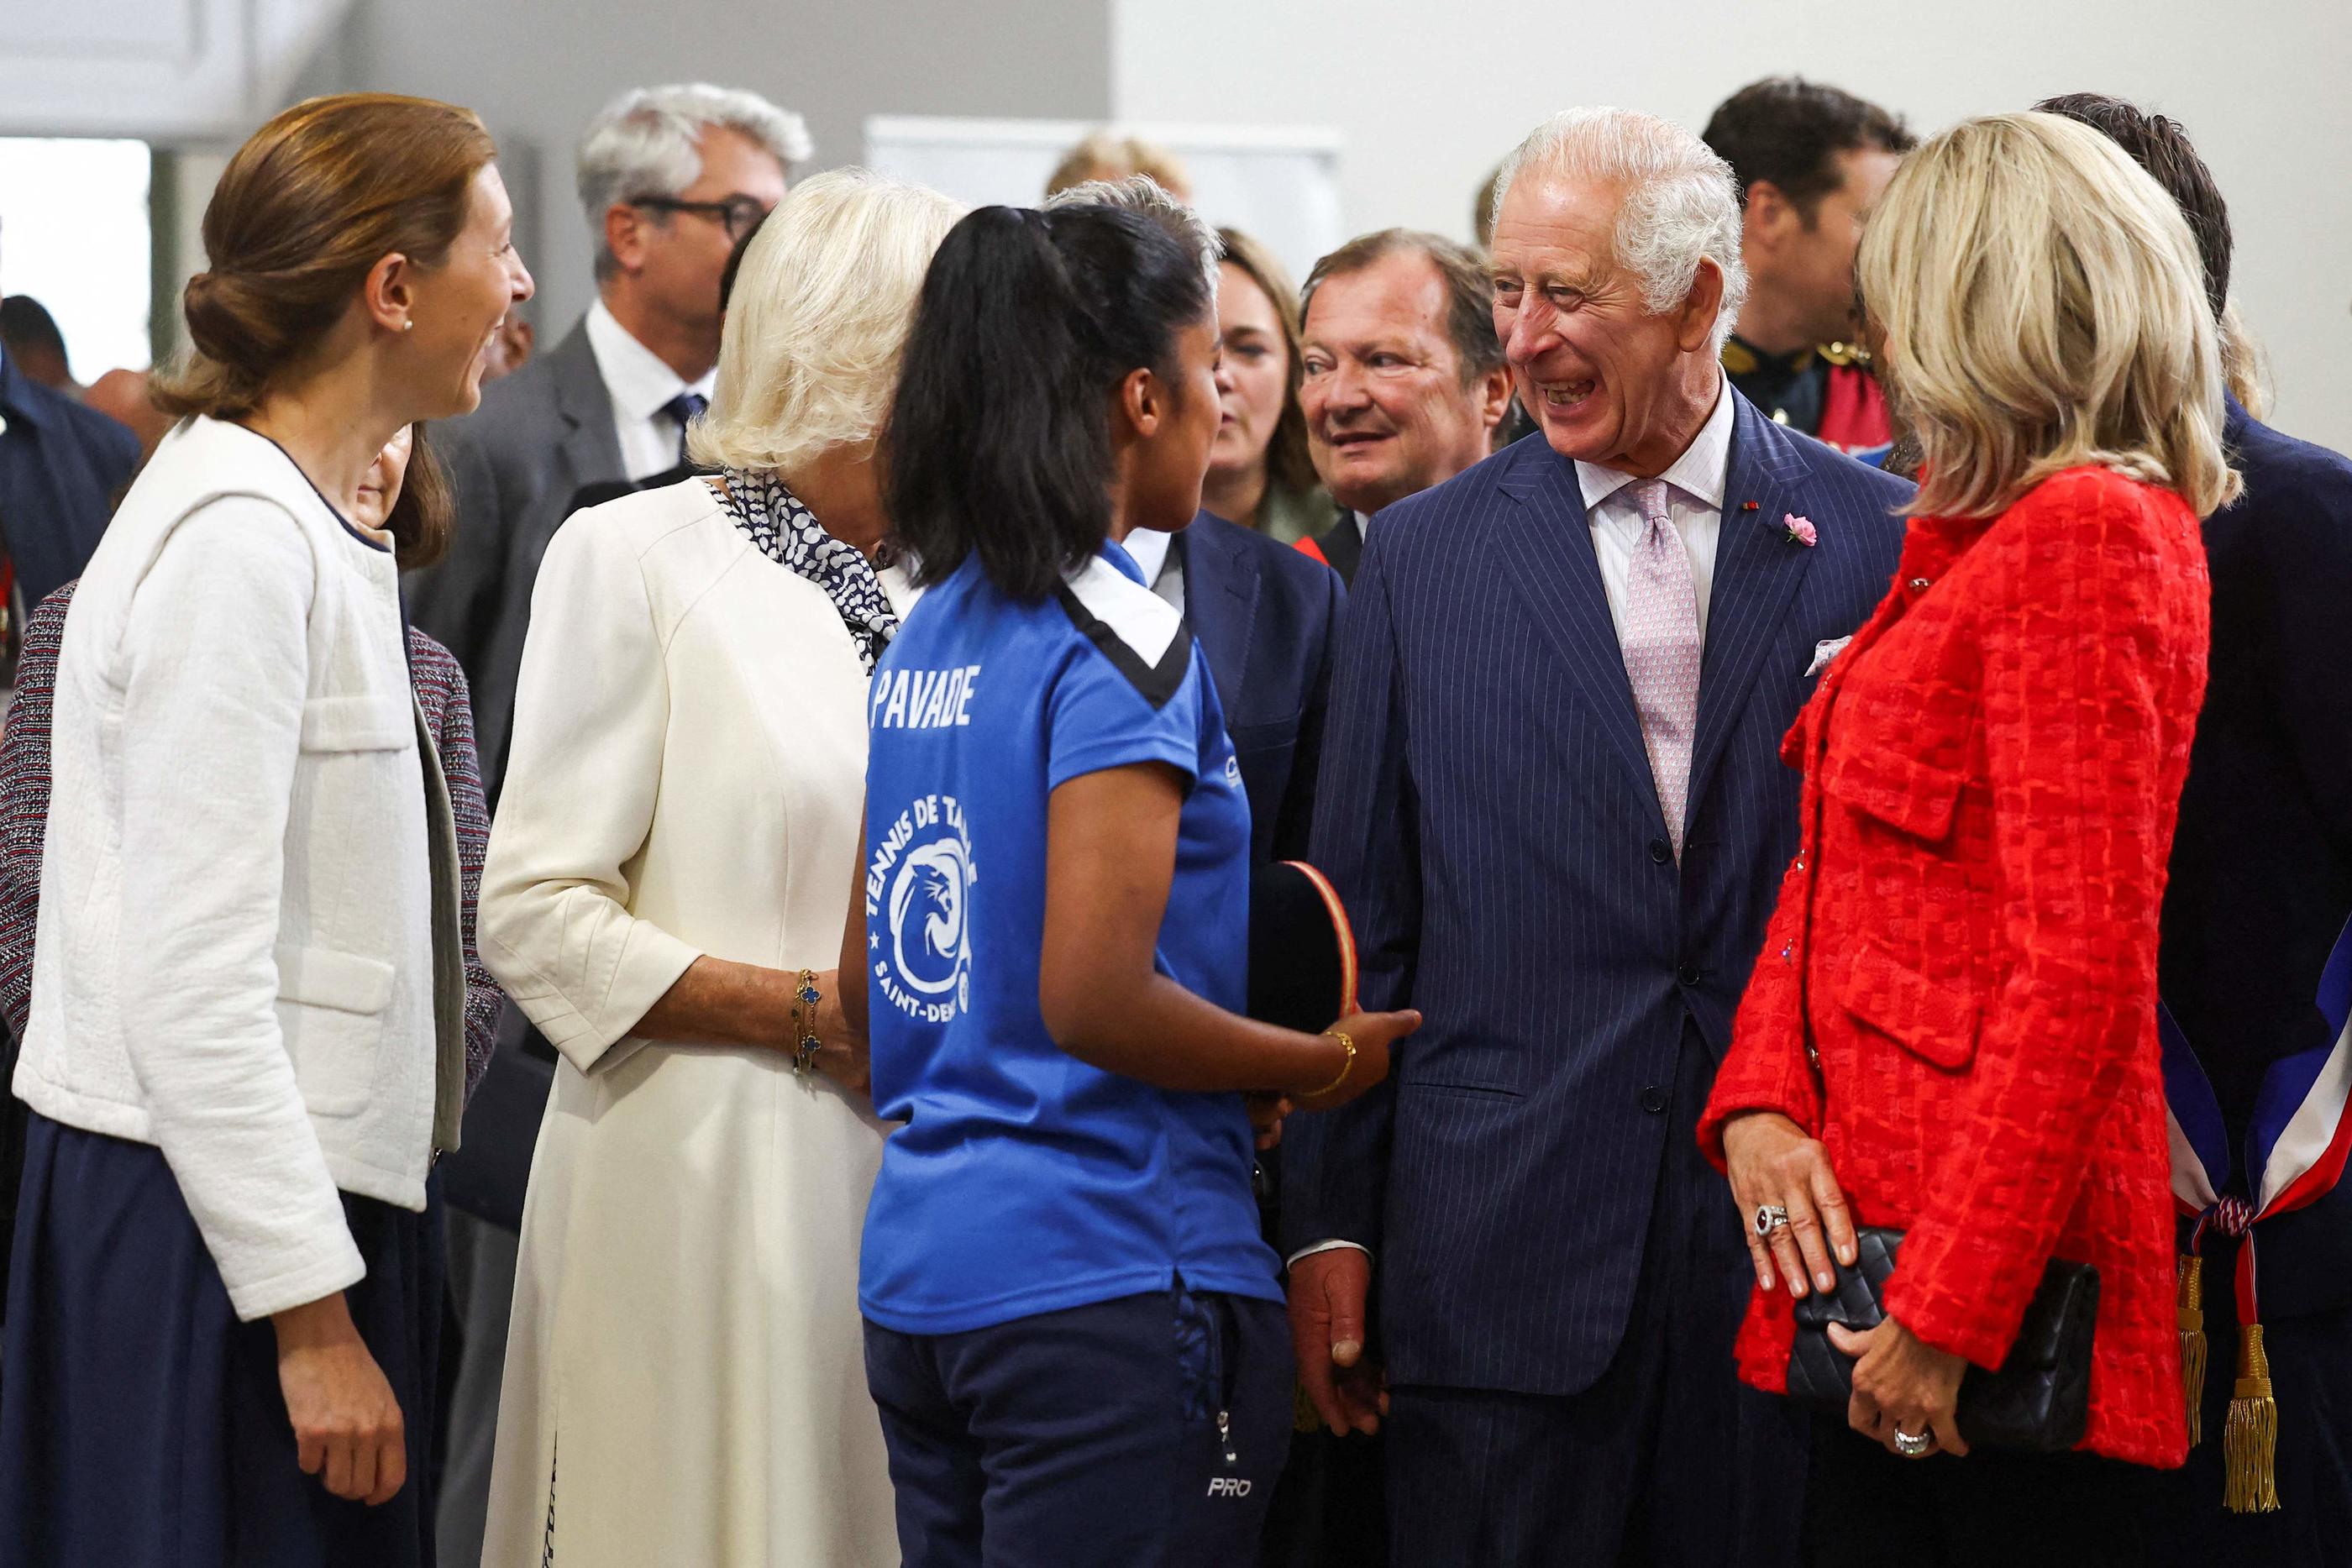 Prithika Pavade en plein échange avec le roi Charles III, sa femme la reine Camilla et Brigitte Macron. Photo HANNAH MCKAY / POOL / AFP